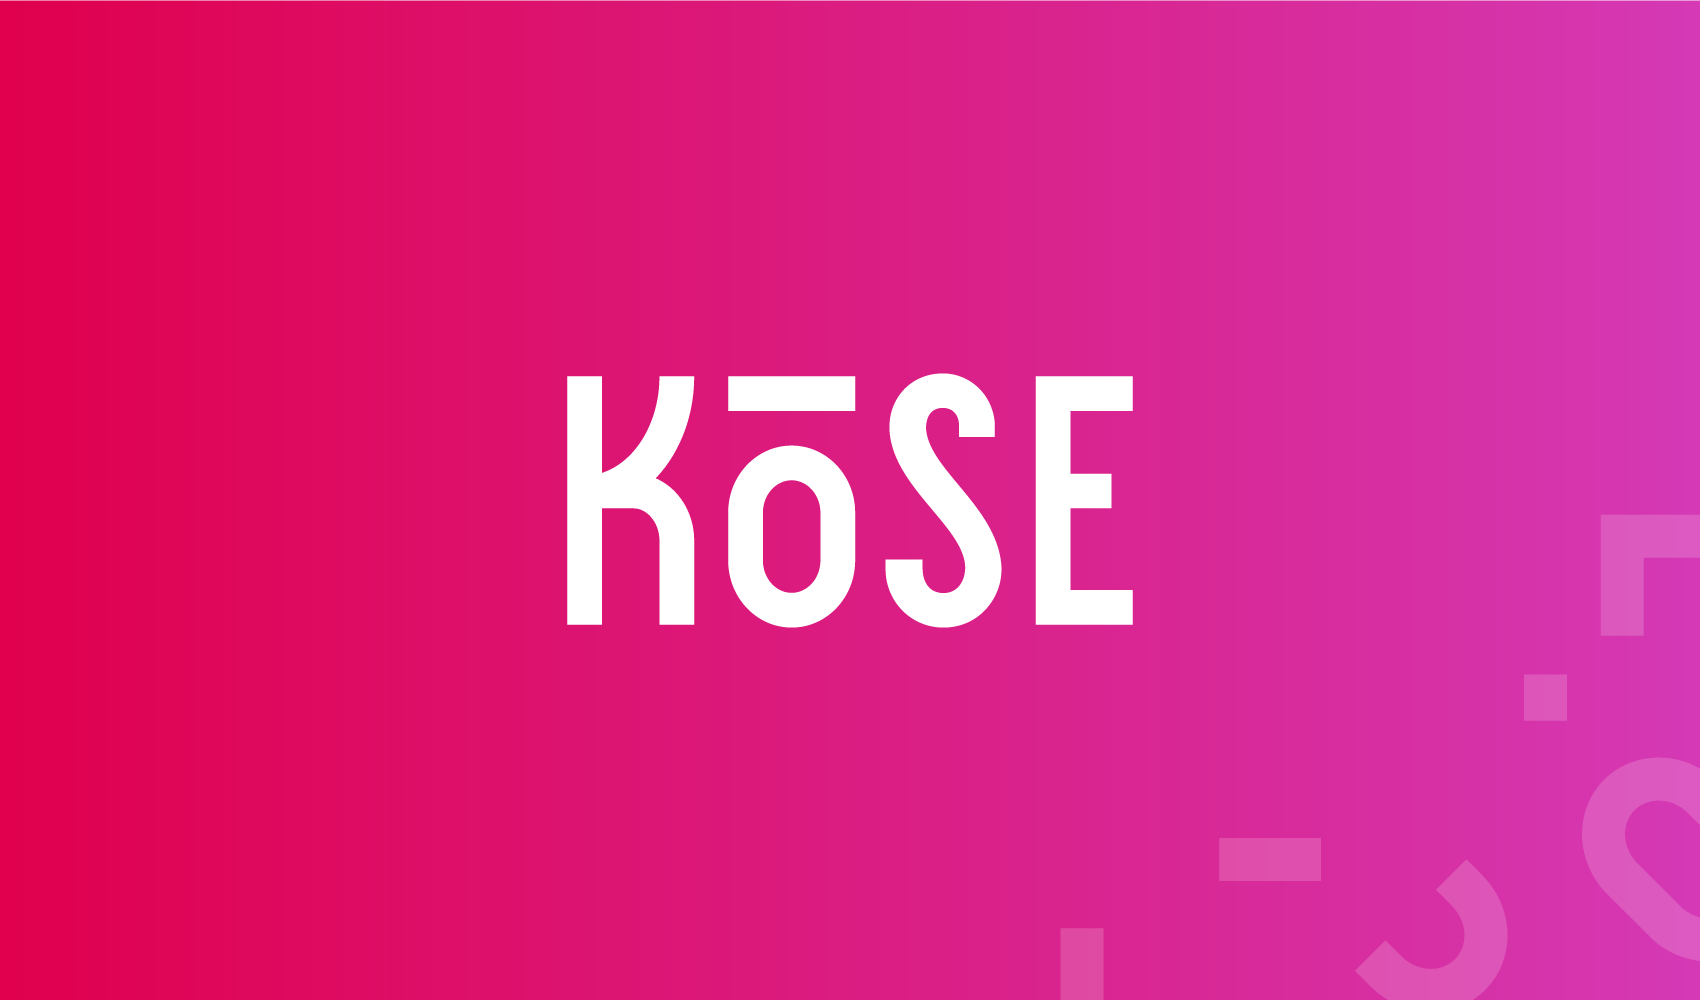 Kose Logo - Kose Logo & Identity Design – 5IVE